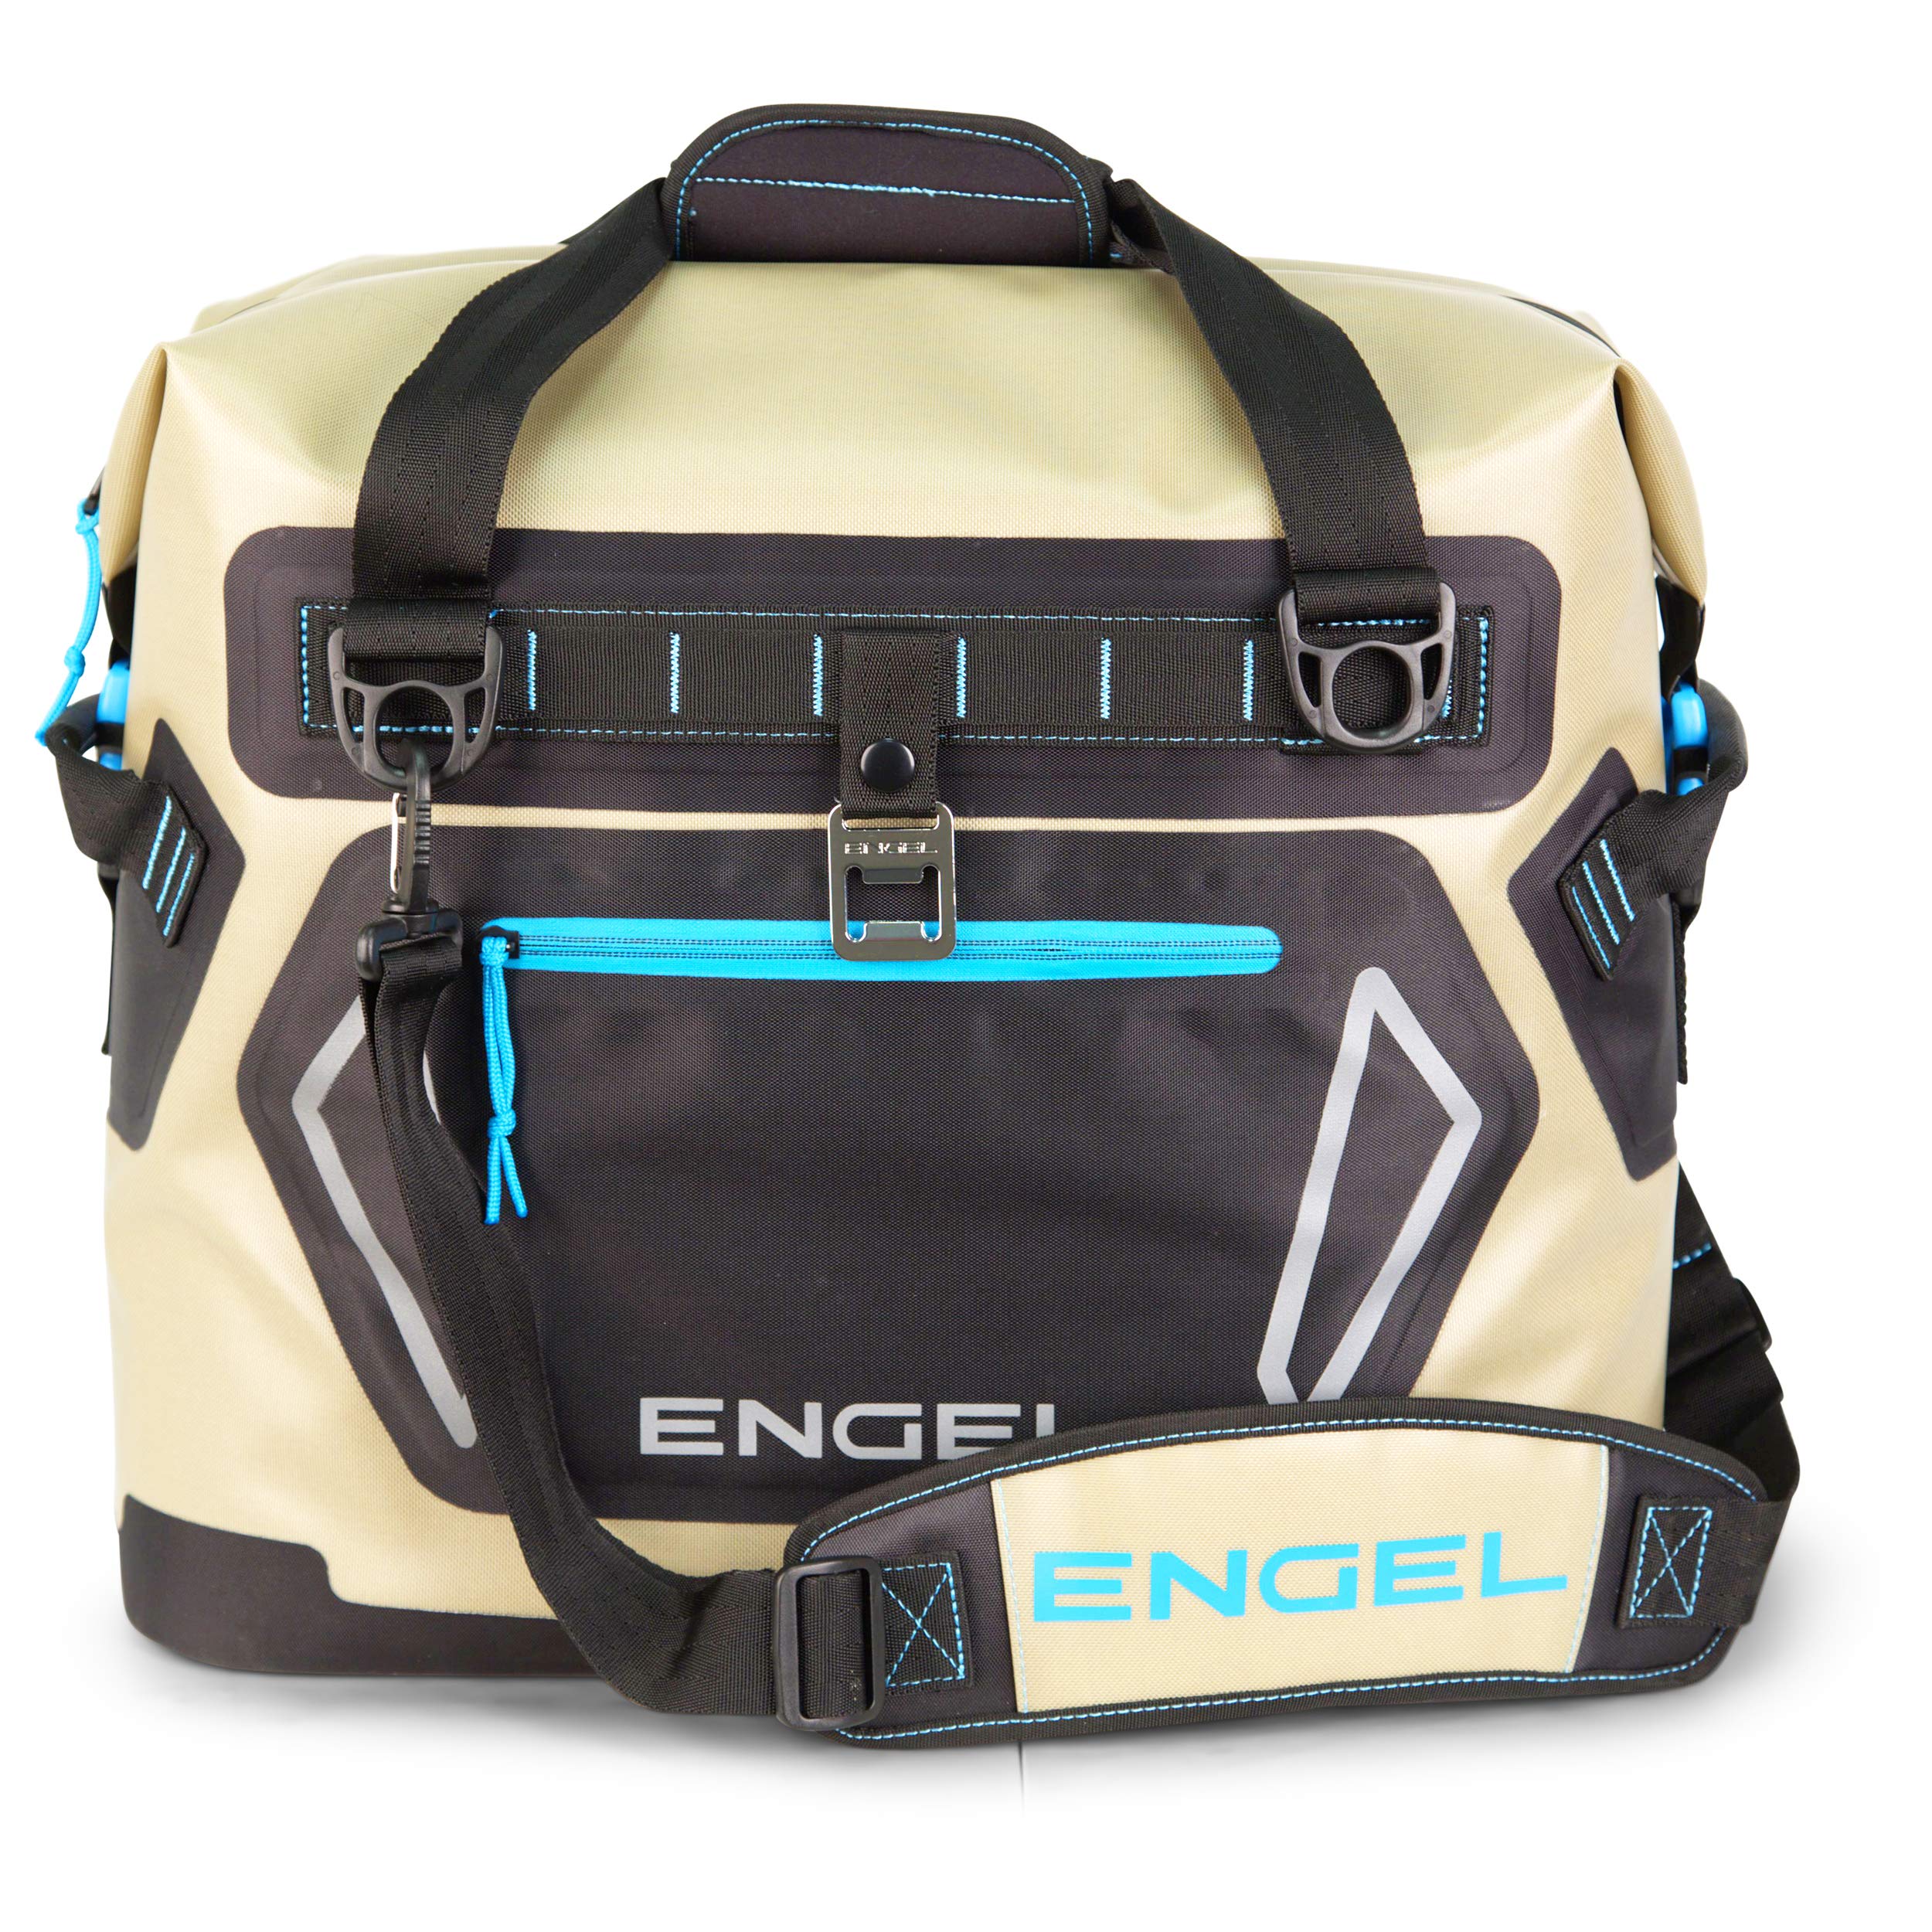 送料無料ENGEL Portable Waterproof Heavy-Duty Foam Insulated Soft-Sided Cooler Bag with Padded Adjustable Strap and Front